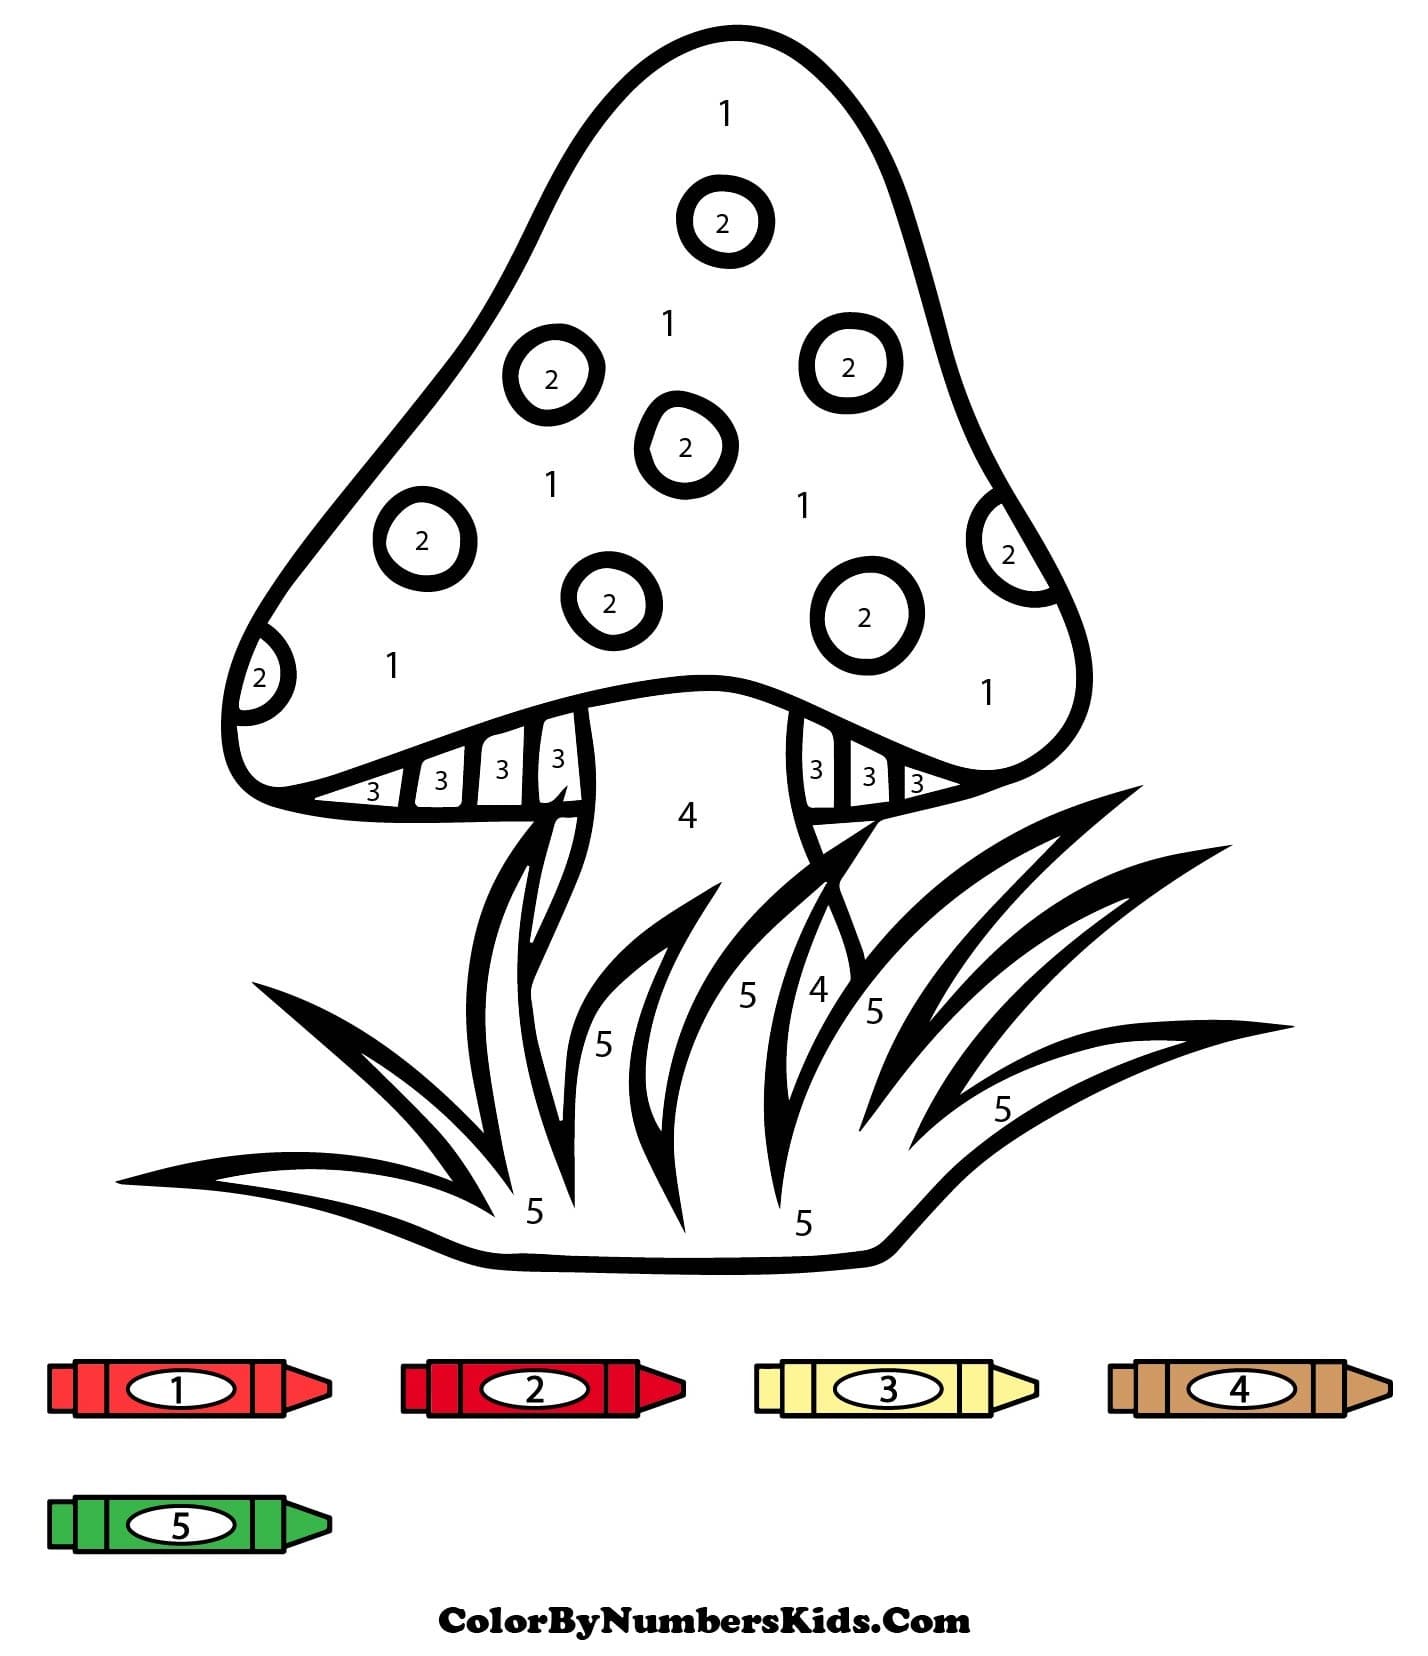 Mushroom Color By Number For Kids